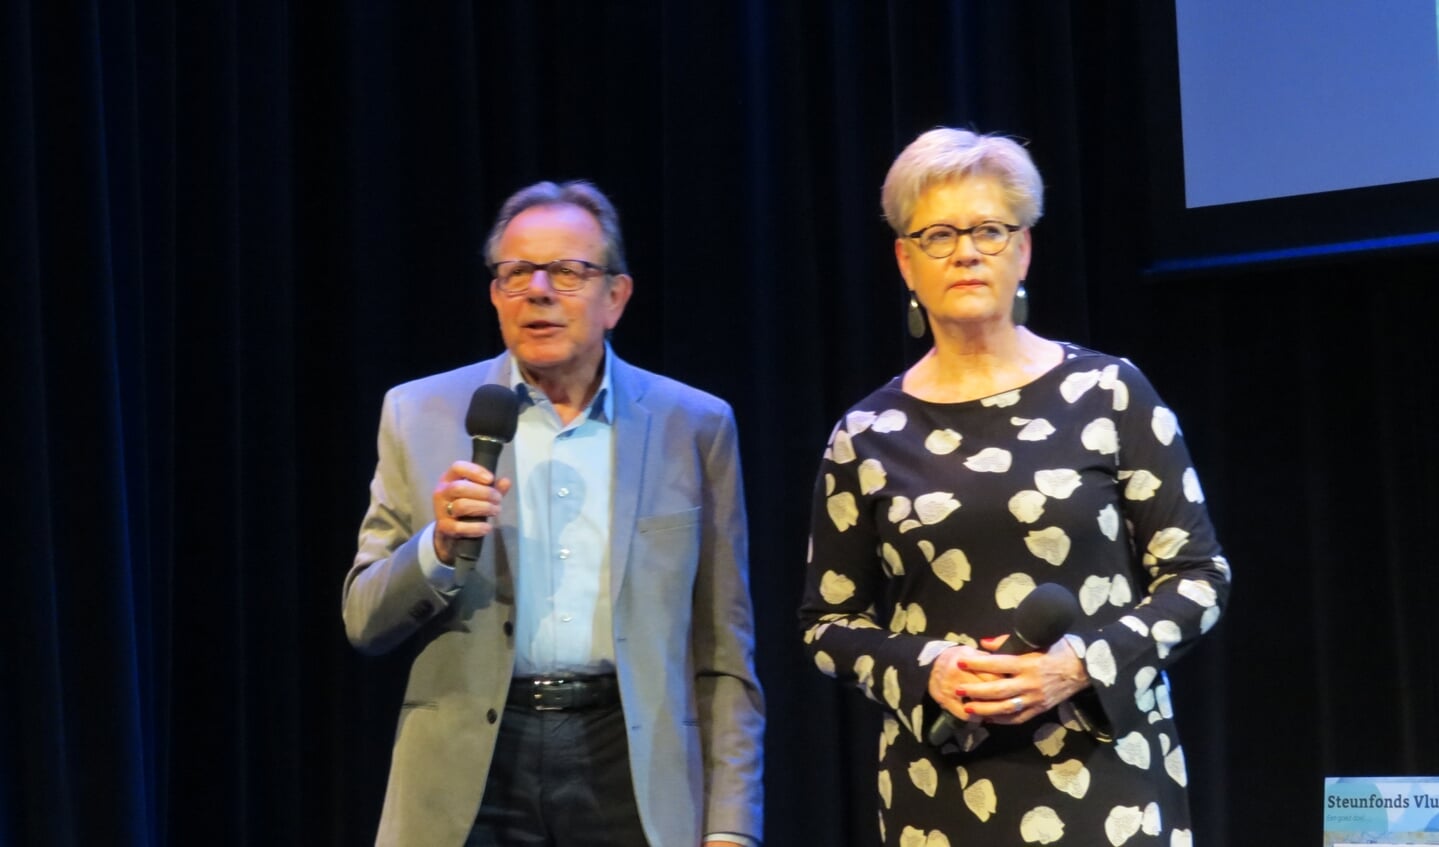 Voorzitter Adri Peters en coördinator Hanneke Eilers van Steunpunt Vluchtelingen De Bilt.